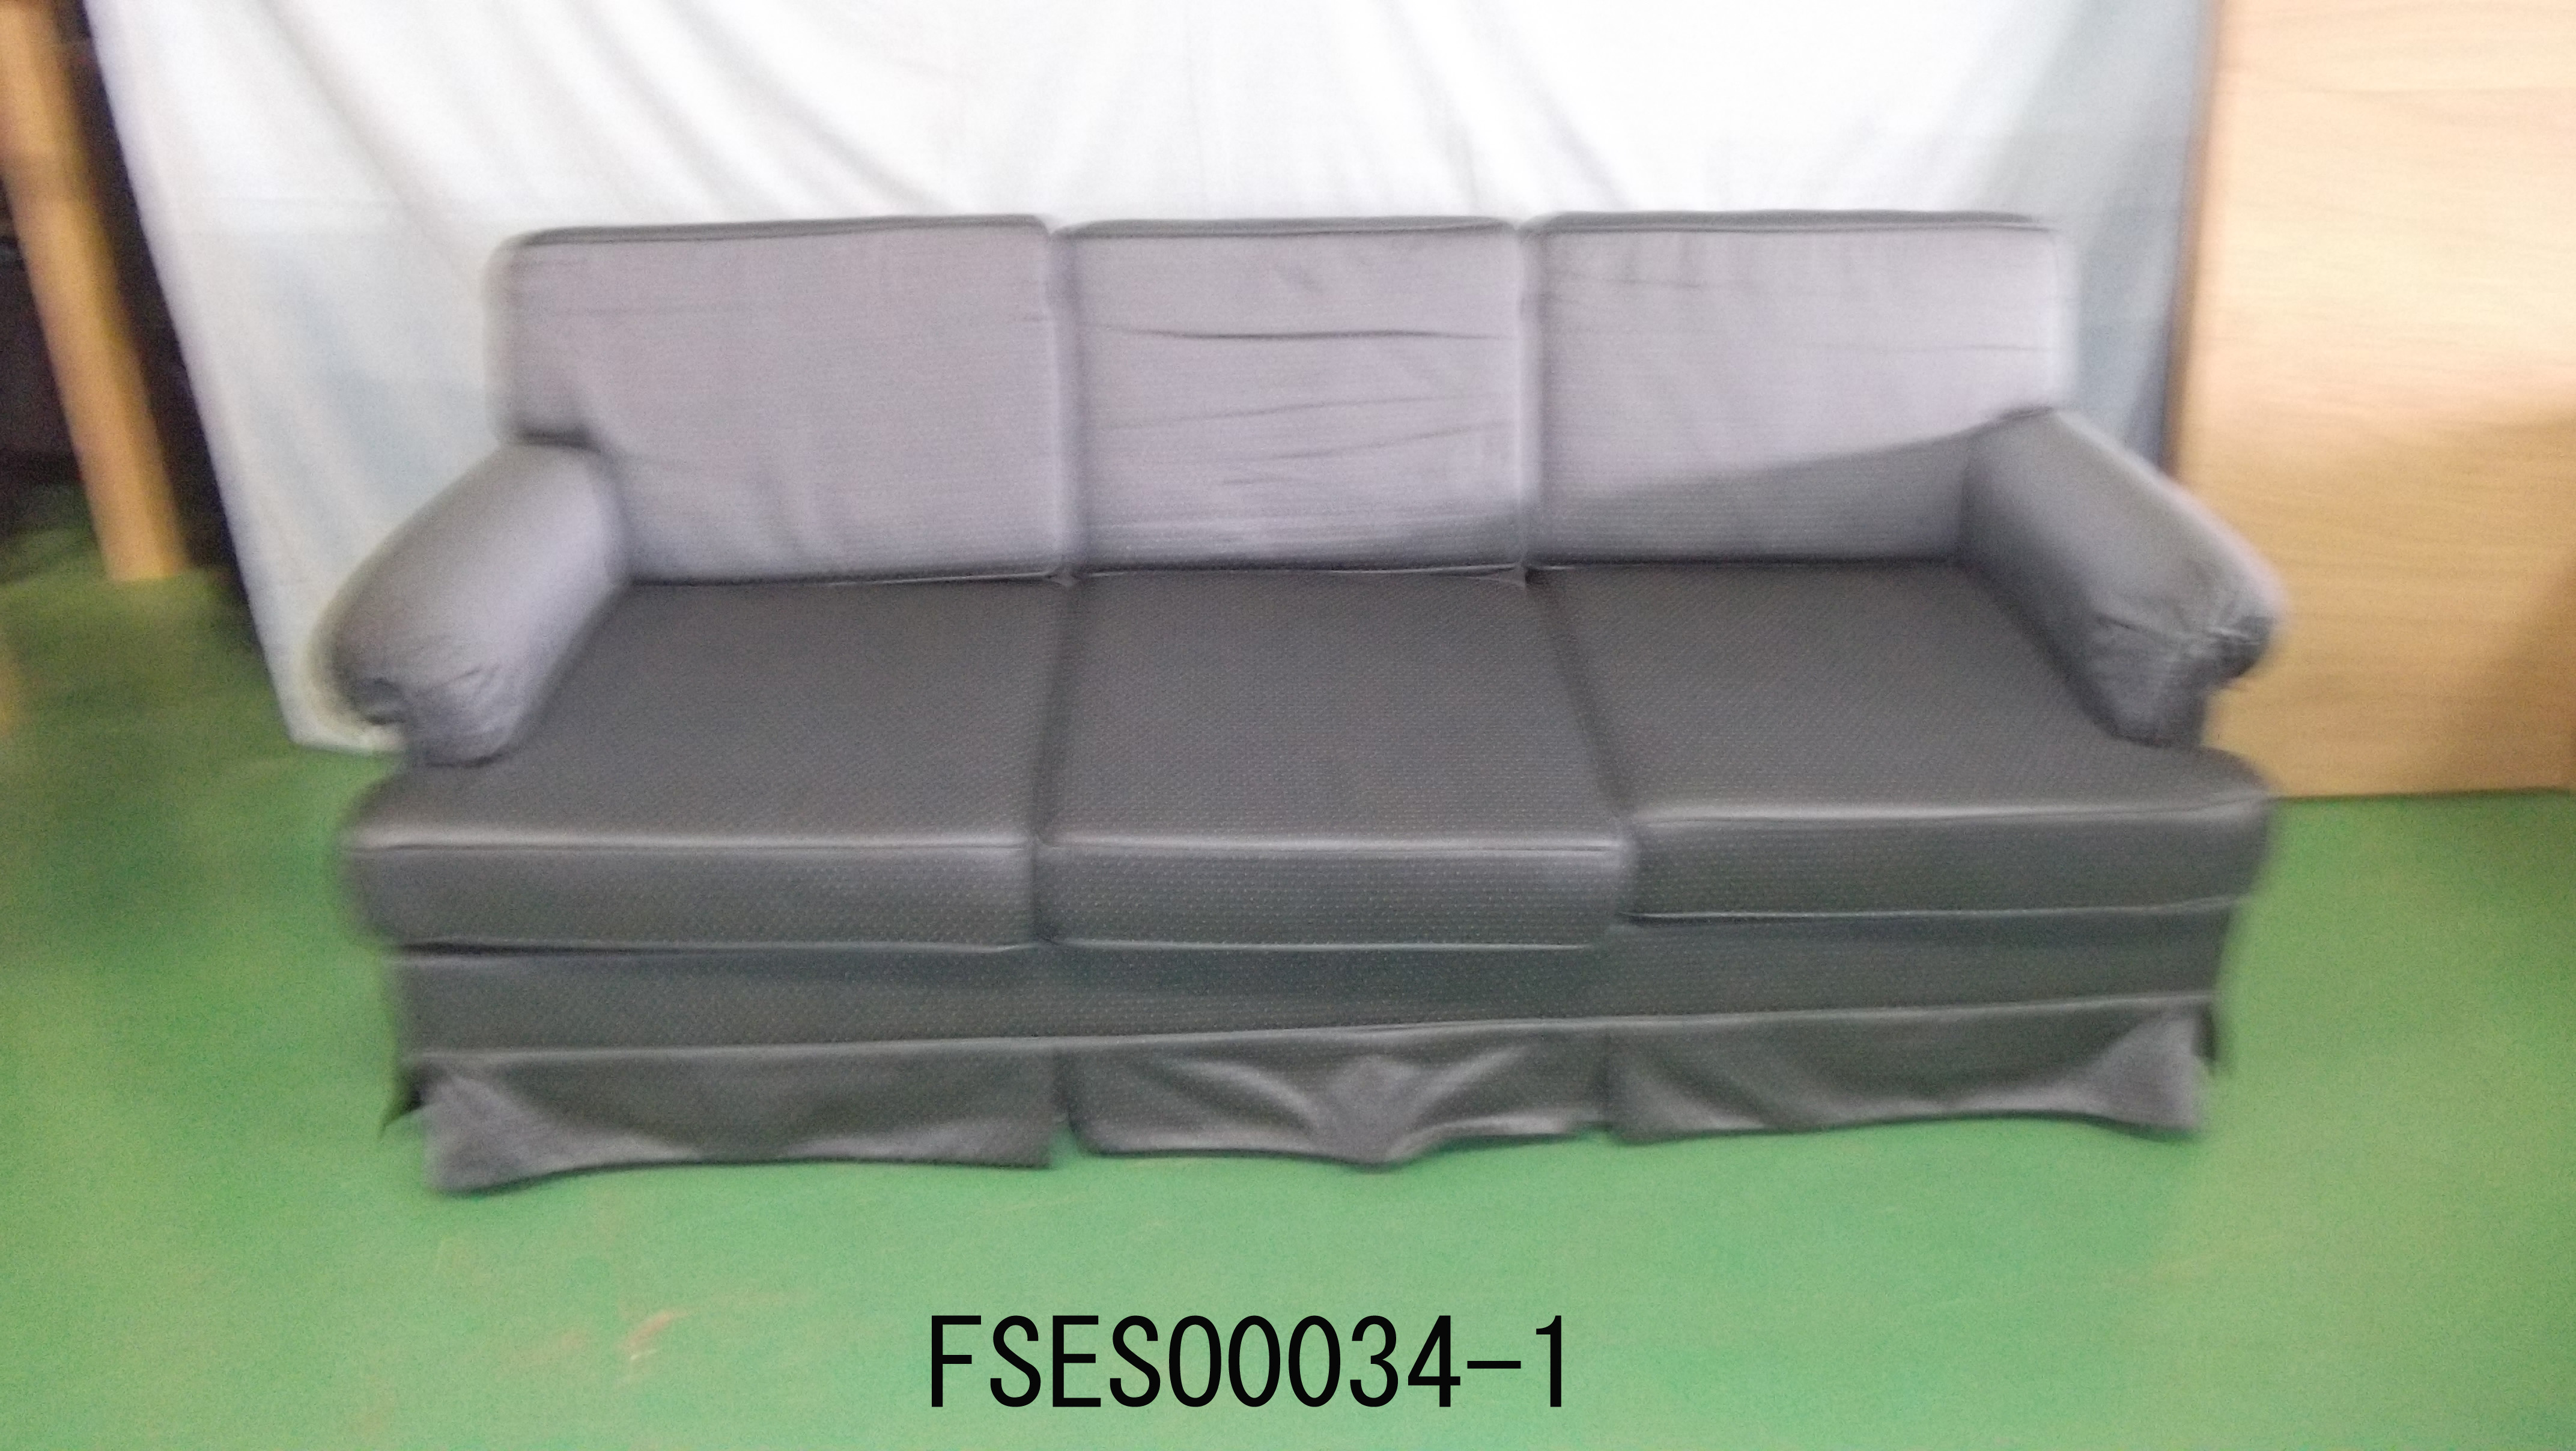 FSESO0034-1